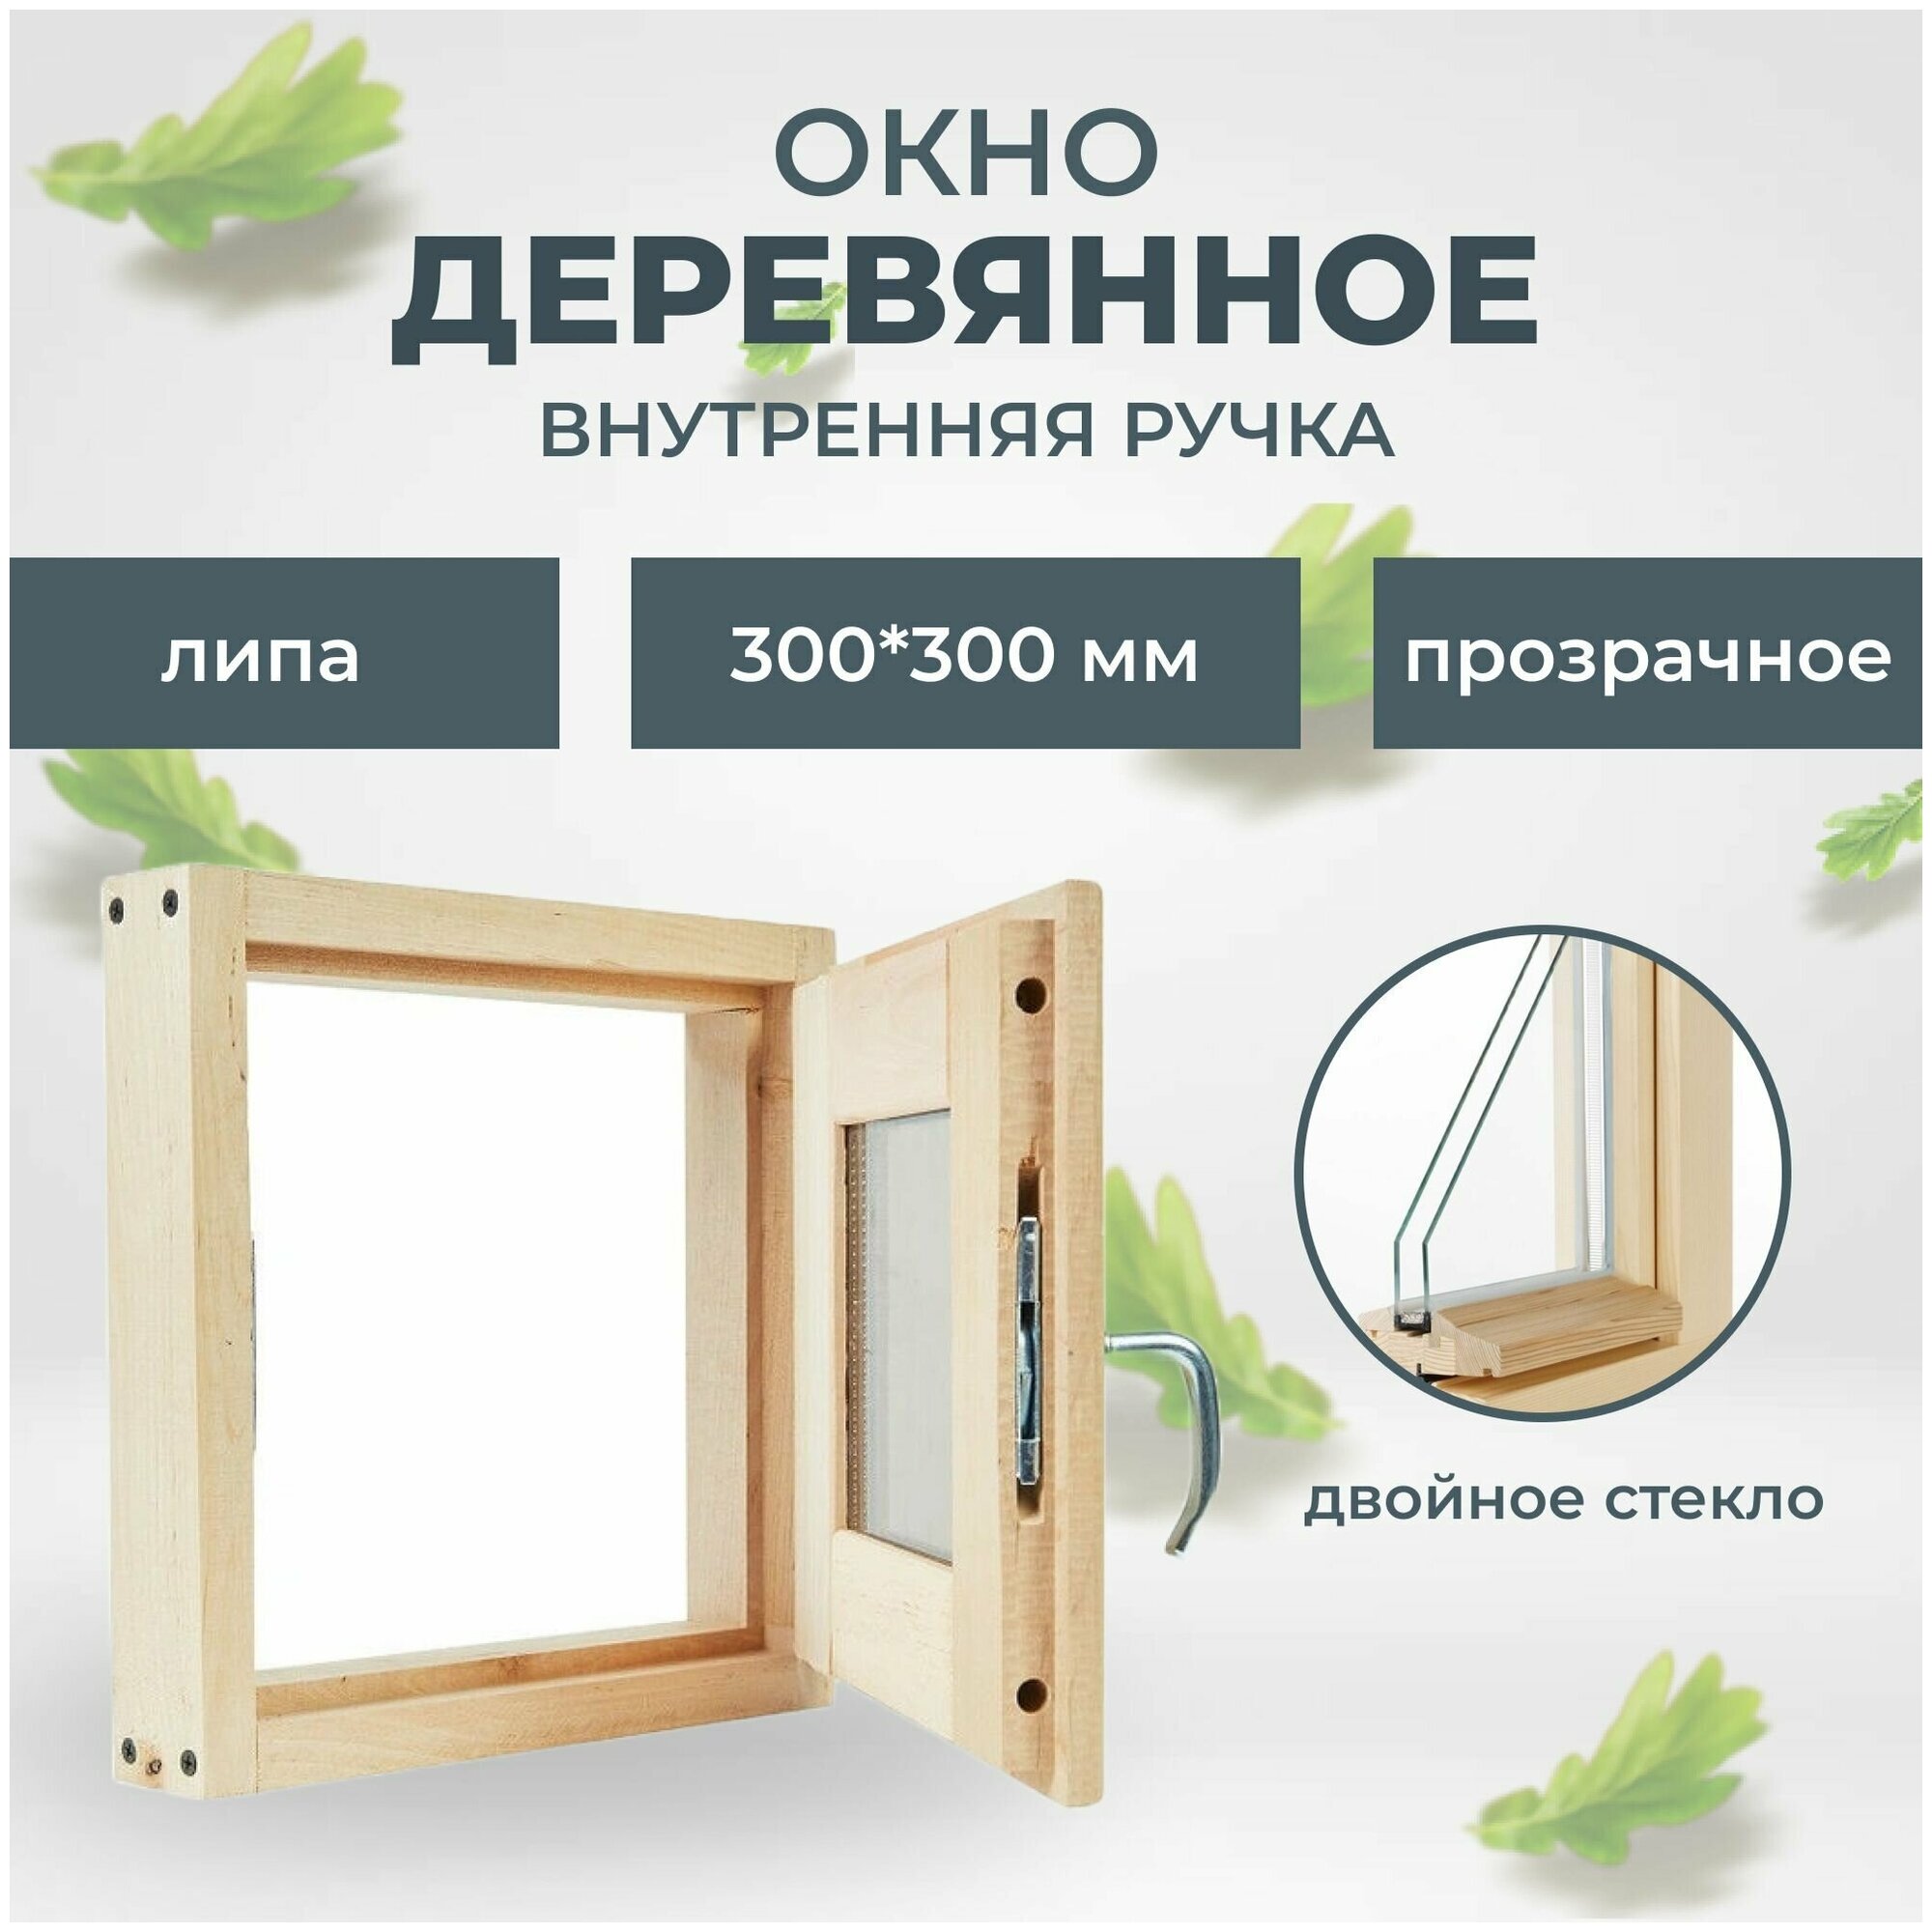 Окно деревянное 300х300 мм внутренняя ручка (липа)